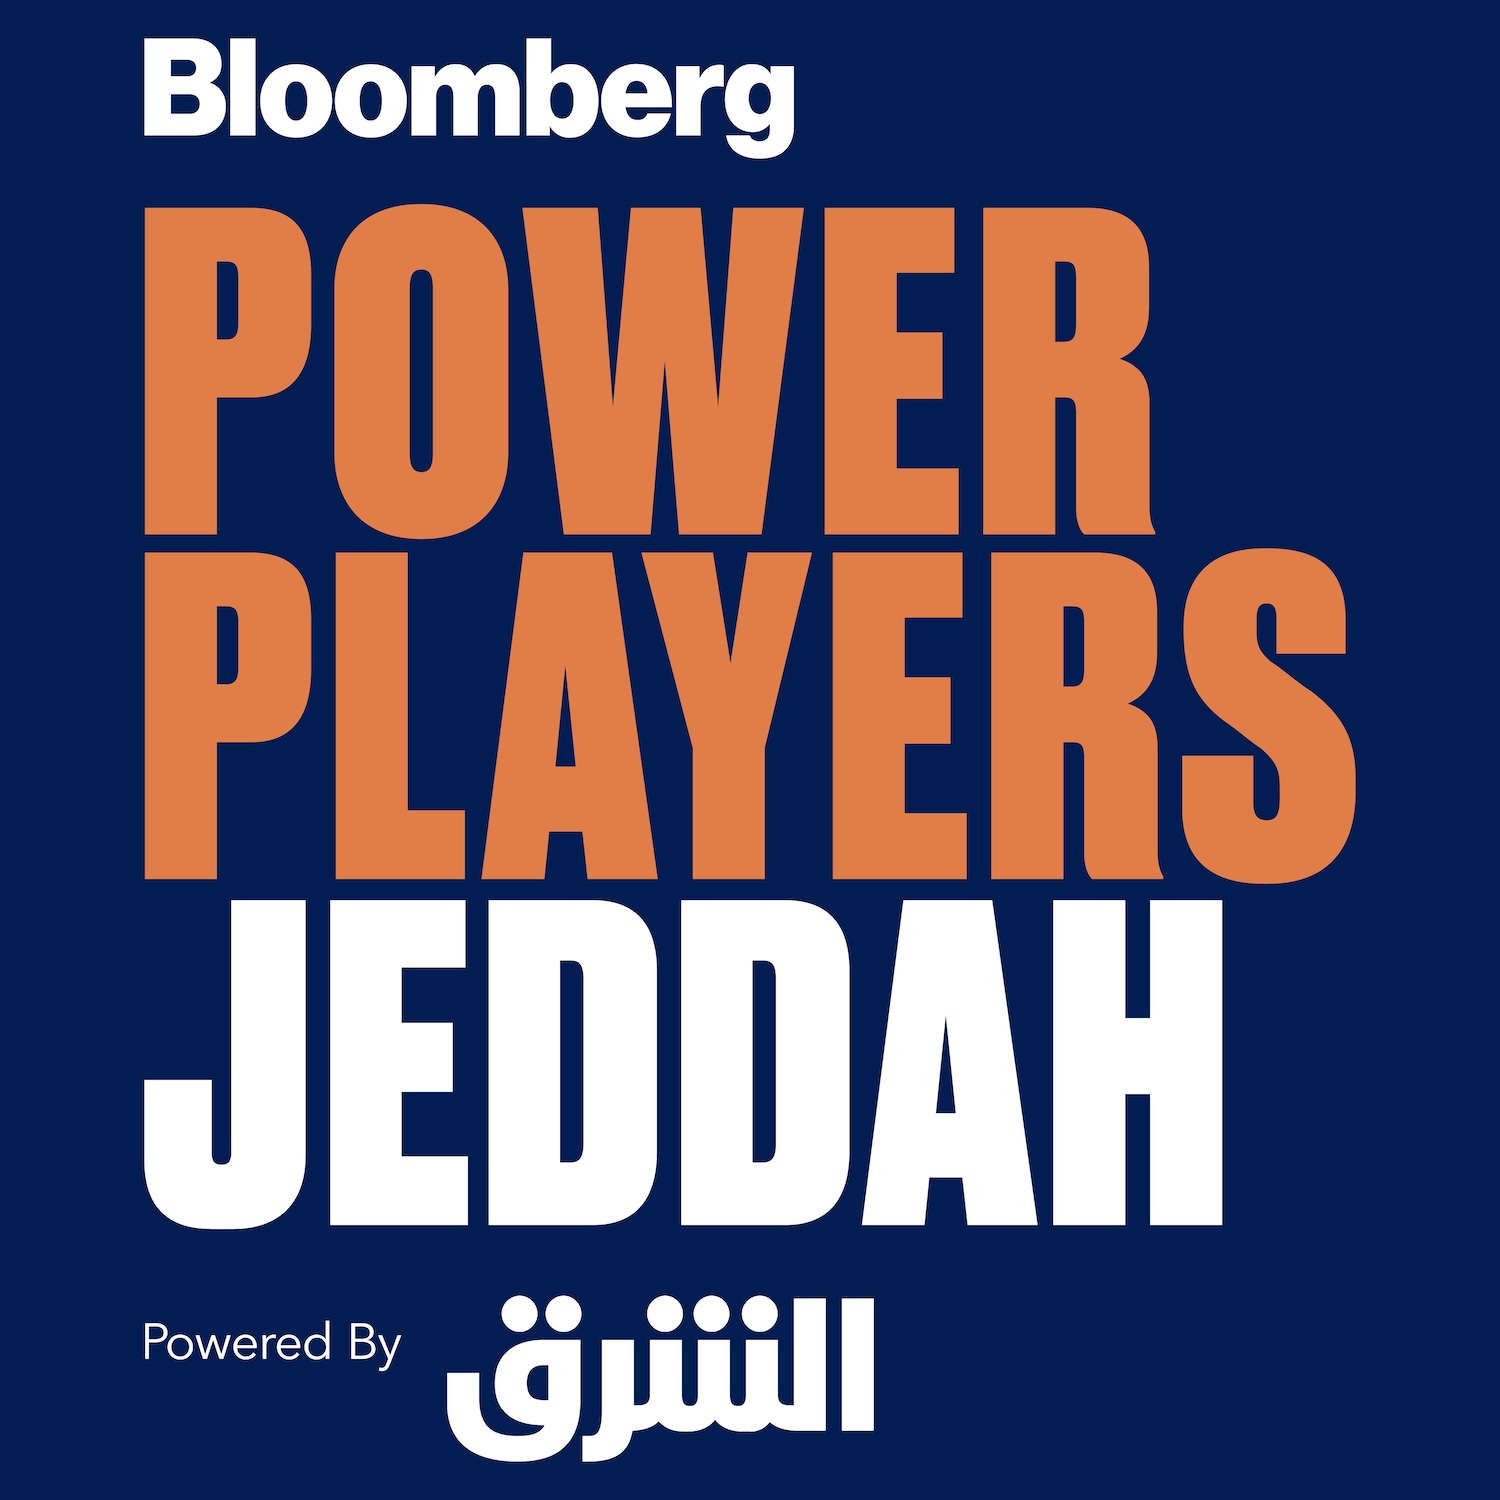 بلومبرغ ميديا وSRMG تعلنان عن إطلاق النسخة الأولى من قمة Bloomberg Power Players  في المملكة العربية السعودية